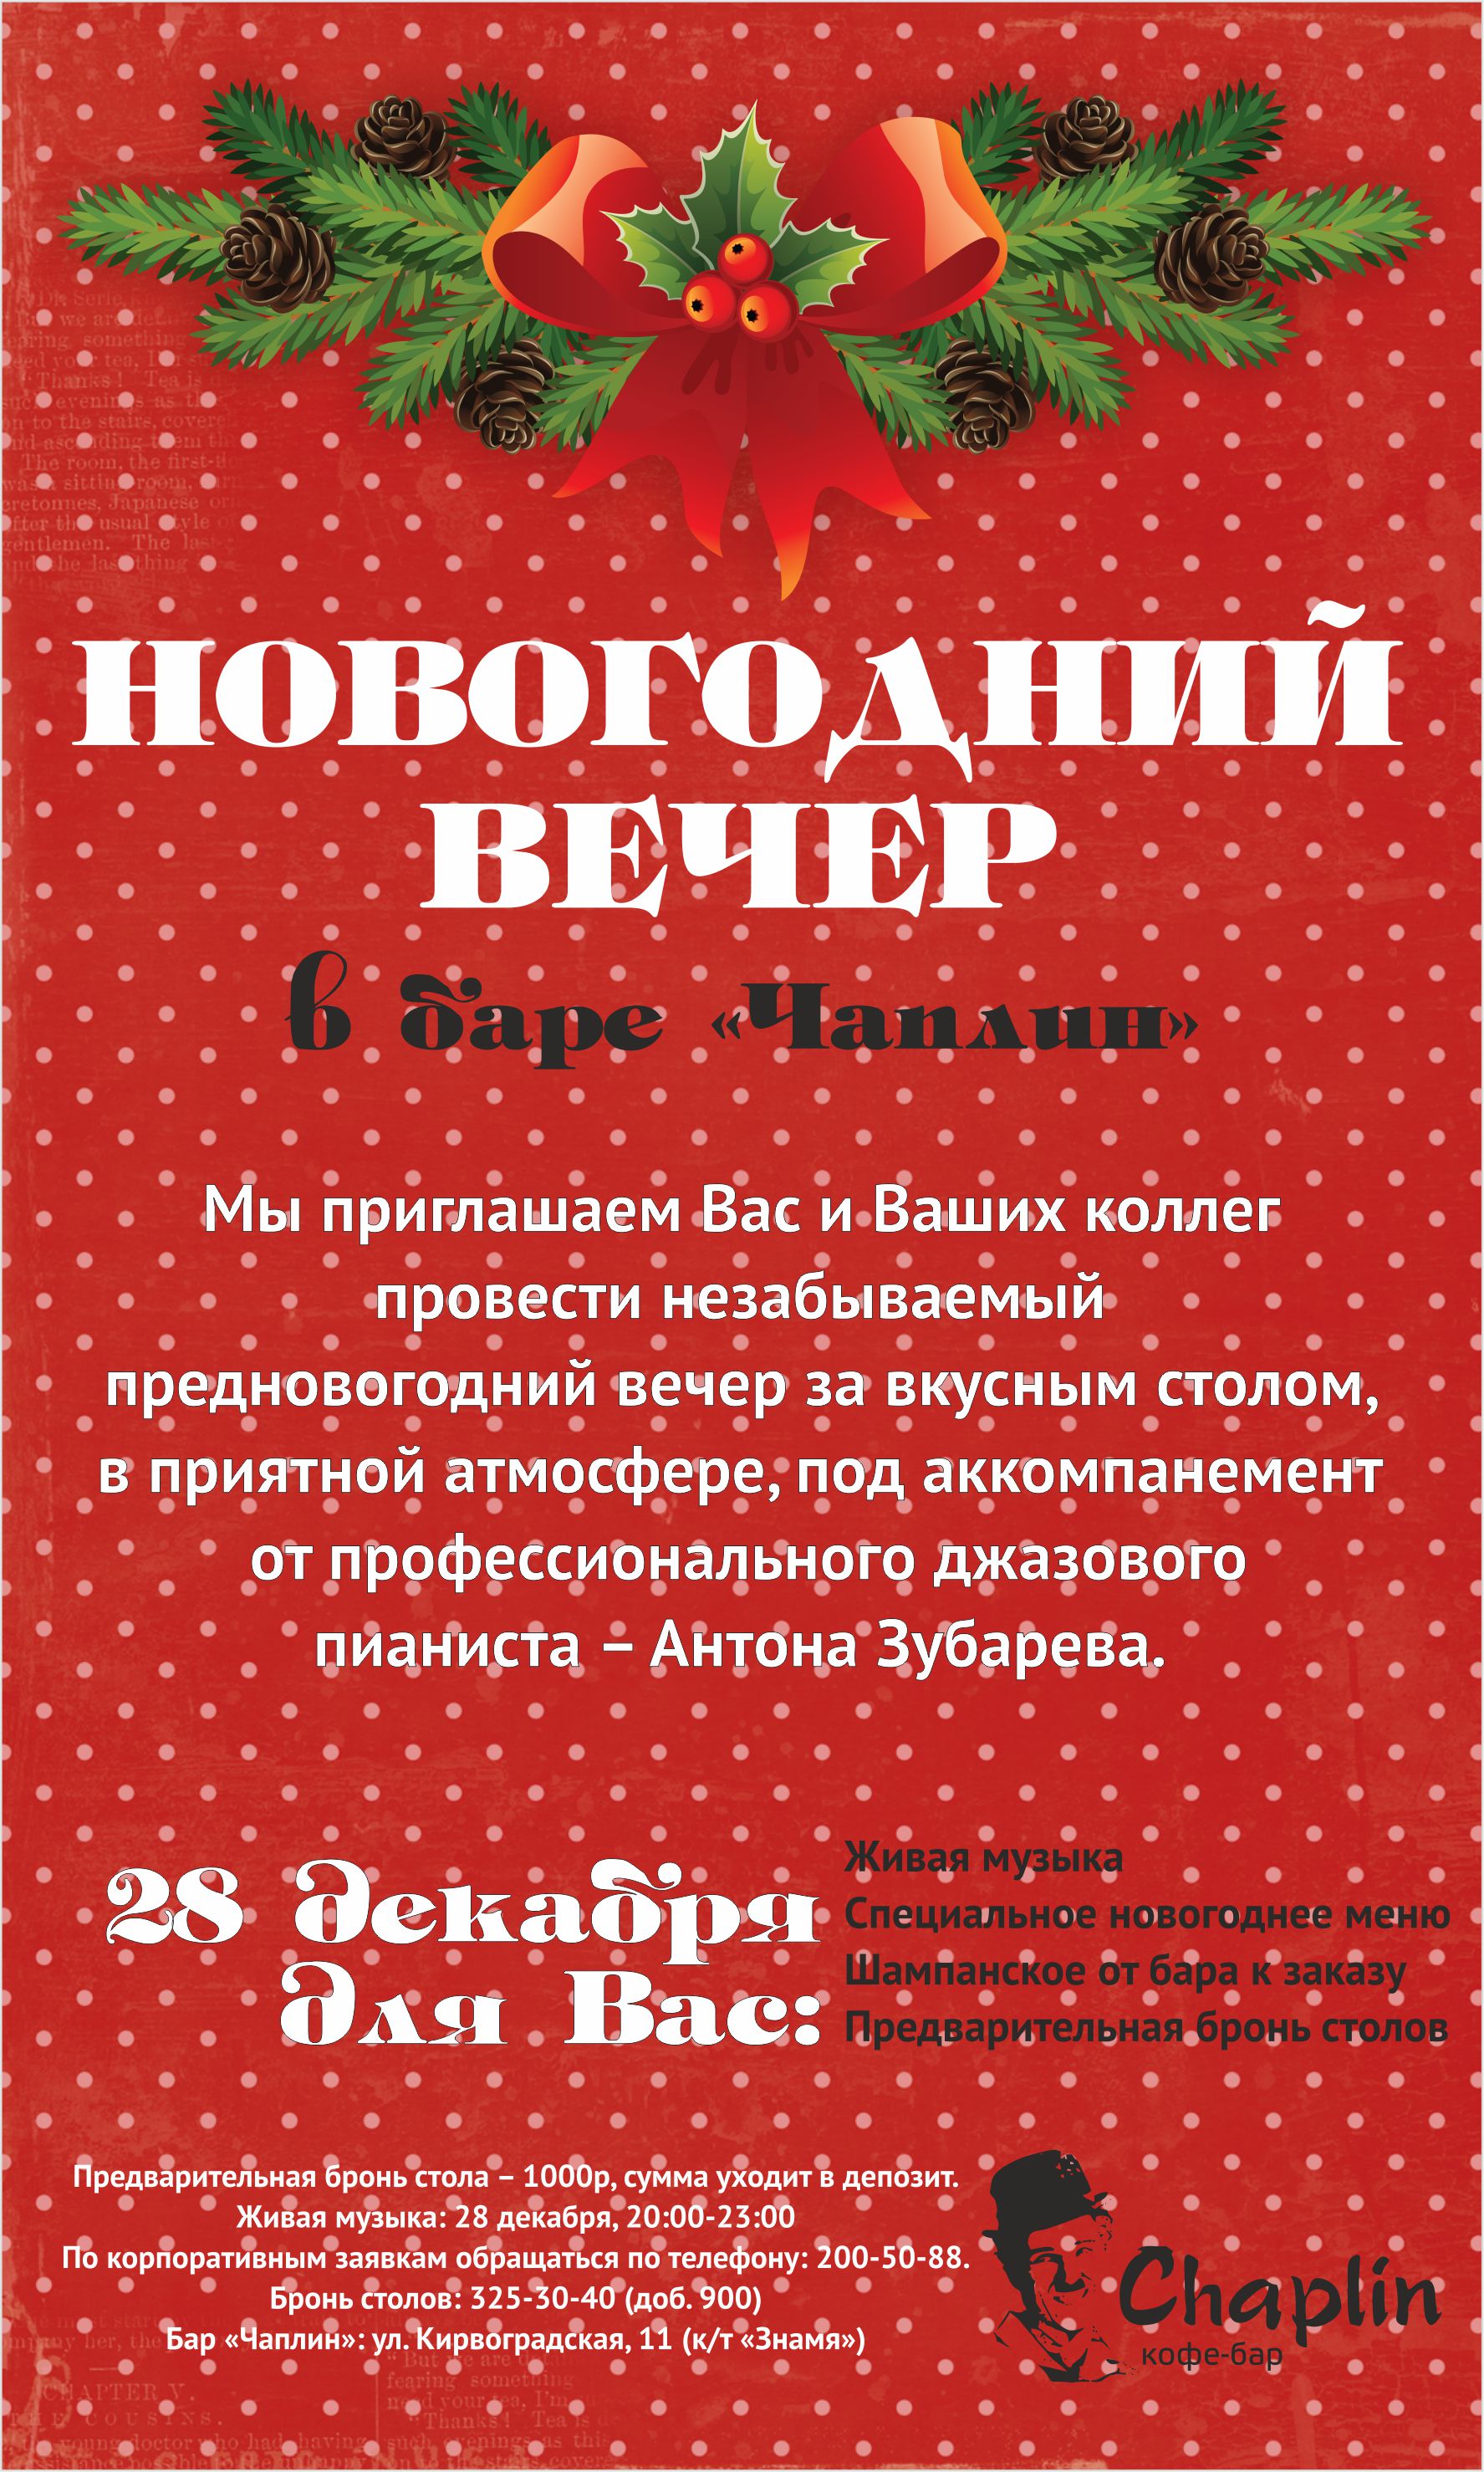 В Екатеринбурге отметят Всемирный день кино в компании Мерлин Монро - Фото 2